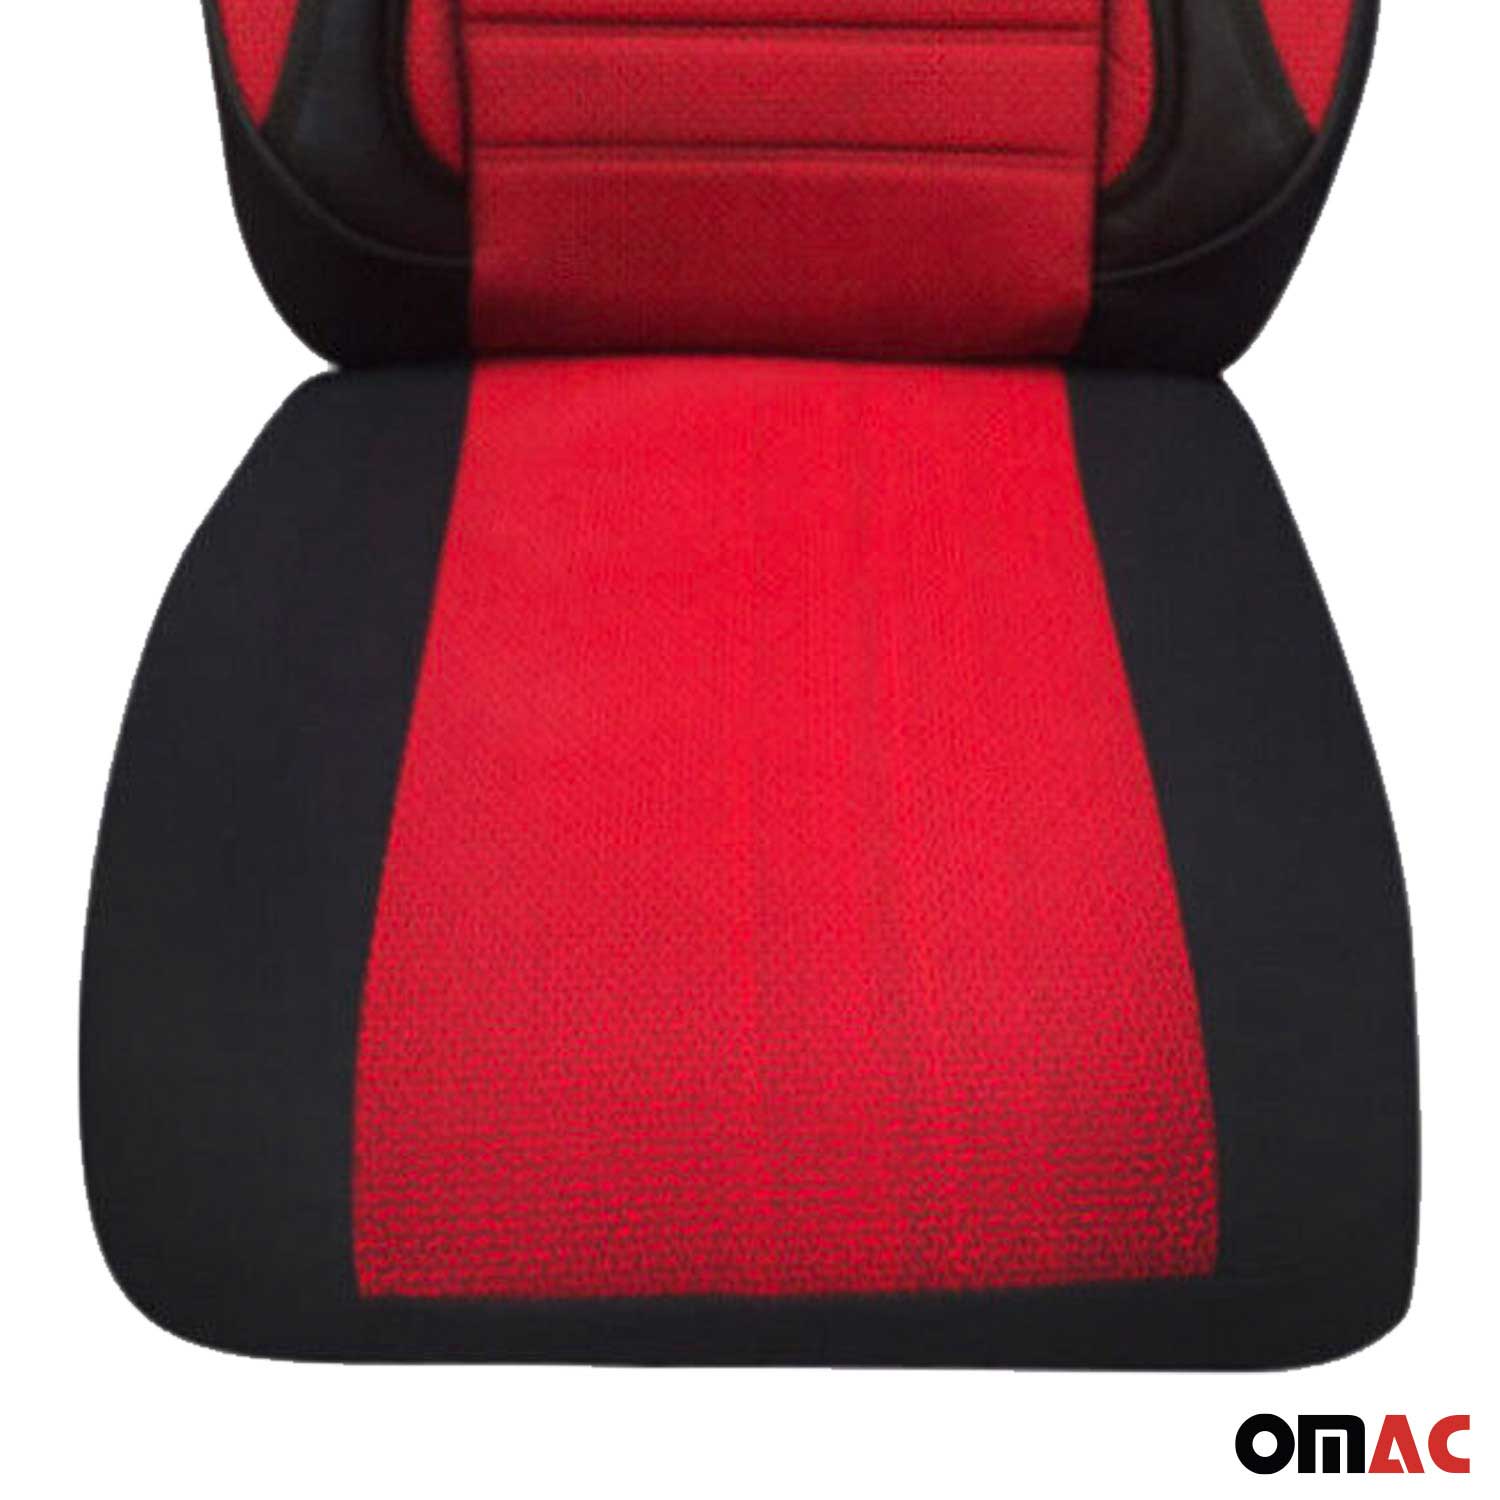 Für Dacia Logan Lodgy Schonbezüge Sitzbezug Schwarz Rot Vorne Satz 1+1